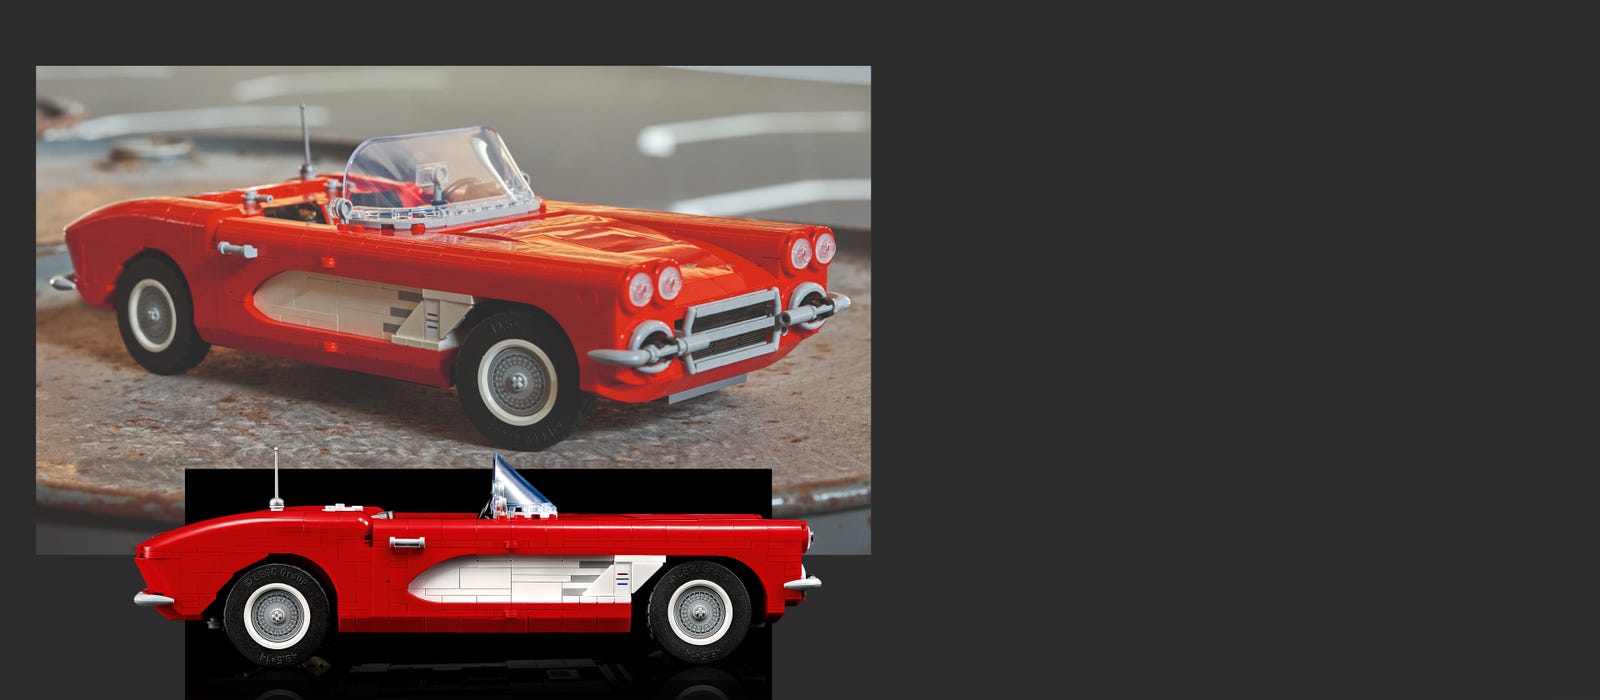 Vespa Scooter Model Vintage Simulation Motor Car Die-cast Static Model Gift  For Kids Fans